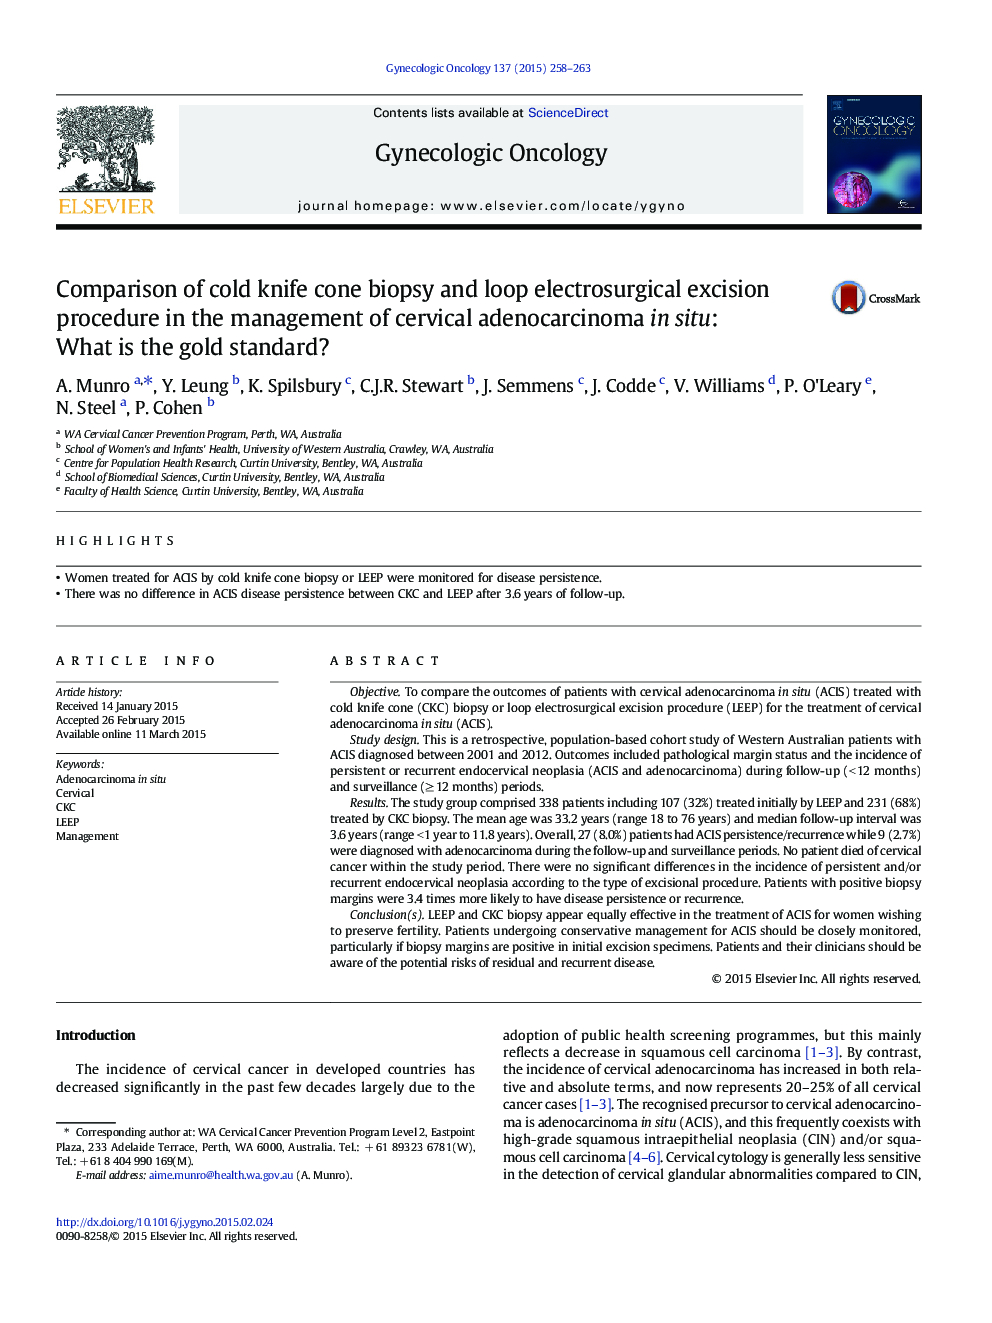 مقایسه روش بیوپسی مخروطی چرخه و روش برش الکتریکی در مدیریت آدنوکارسینوم گردن در محل: استاندارد طلا چیست؟ 